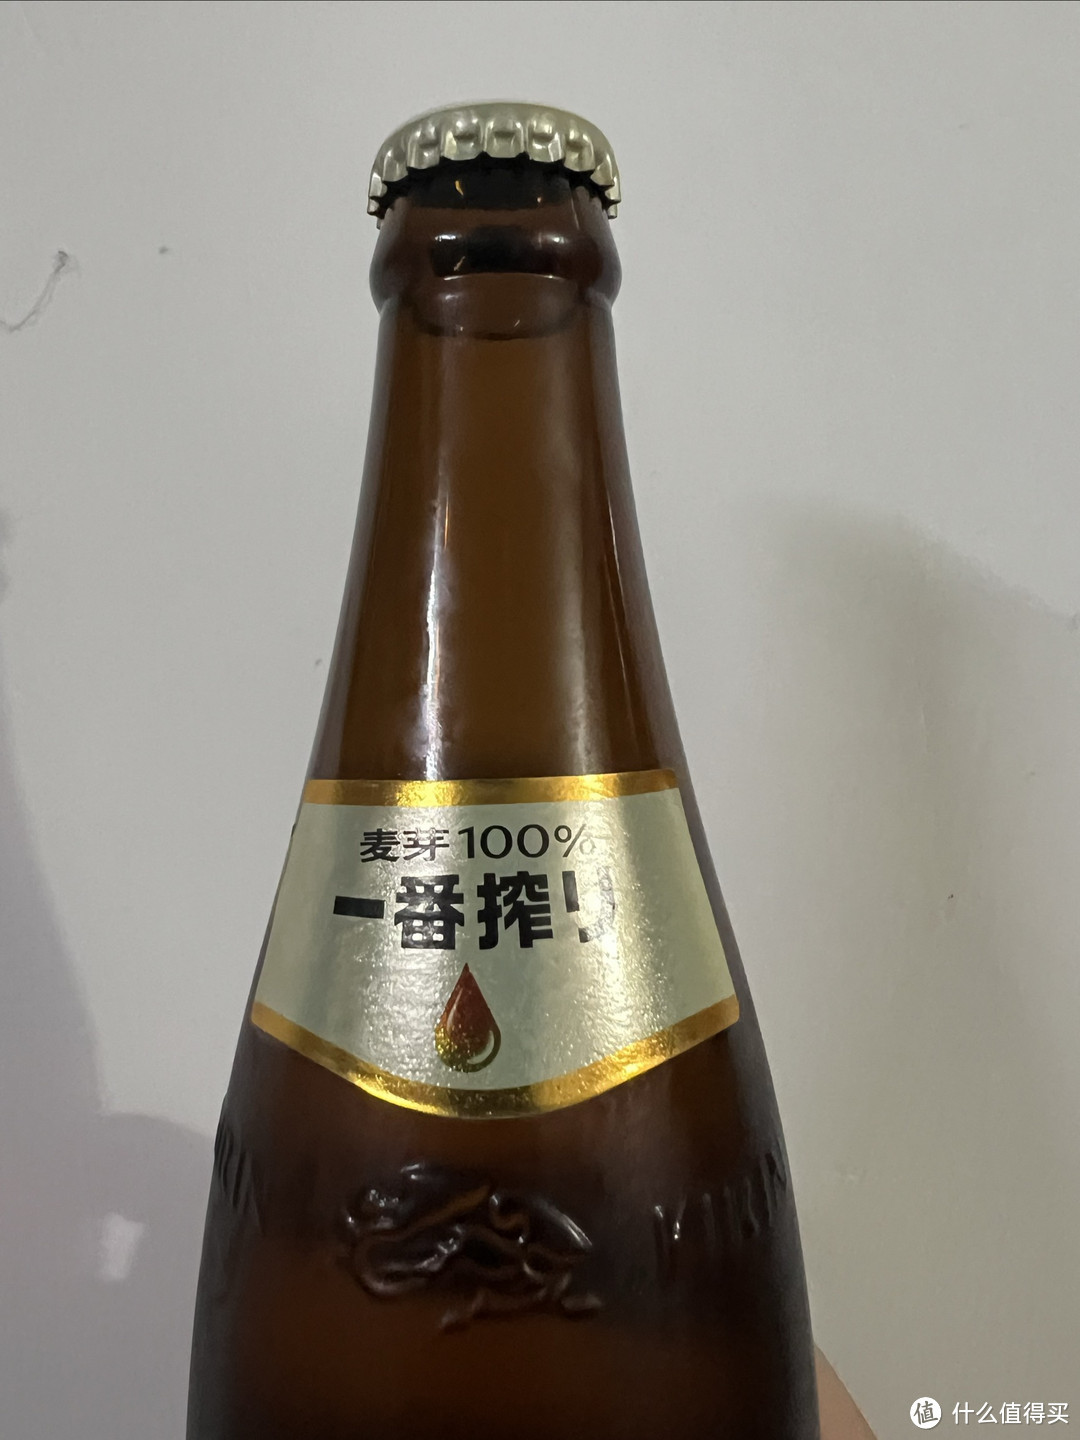 国庆节的日常，喝了一瓶最贵的麒麟Kirin一番榨黄啤酒